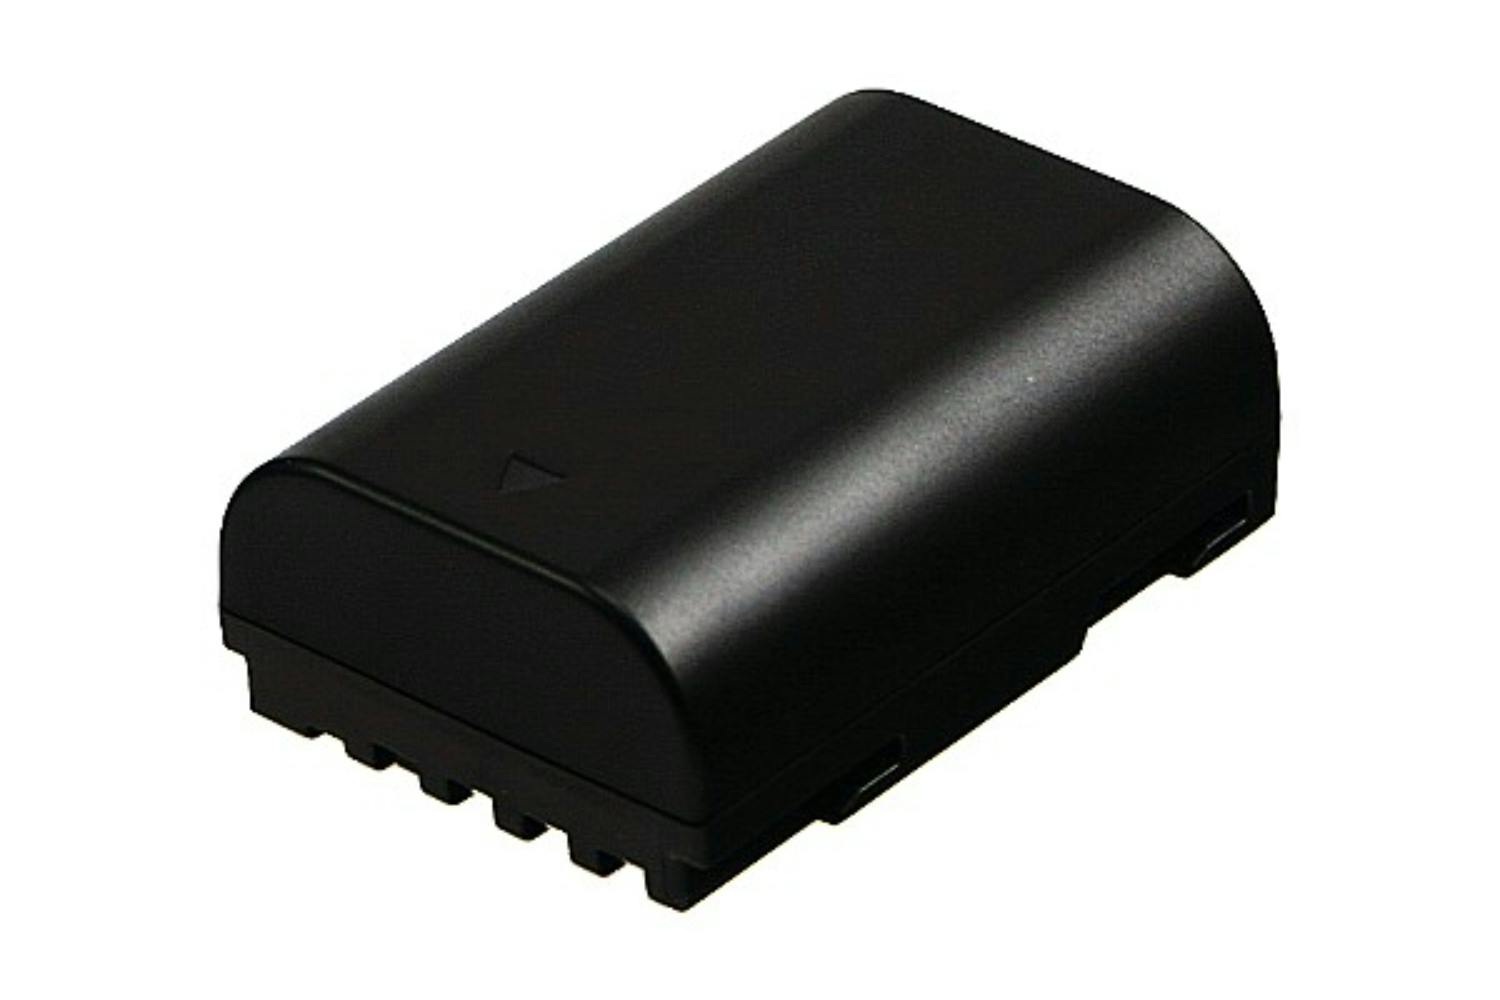 2-Power 1600mAh Digital Camera Battery